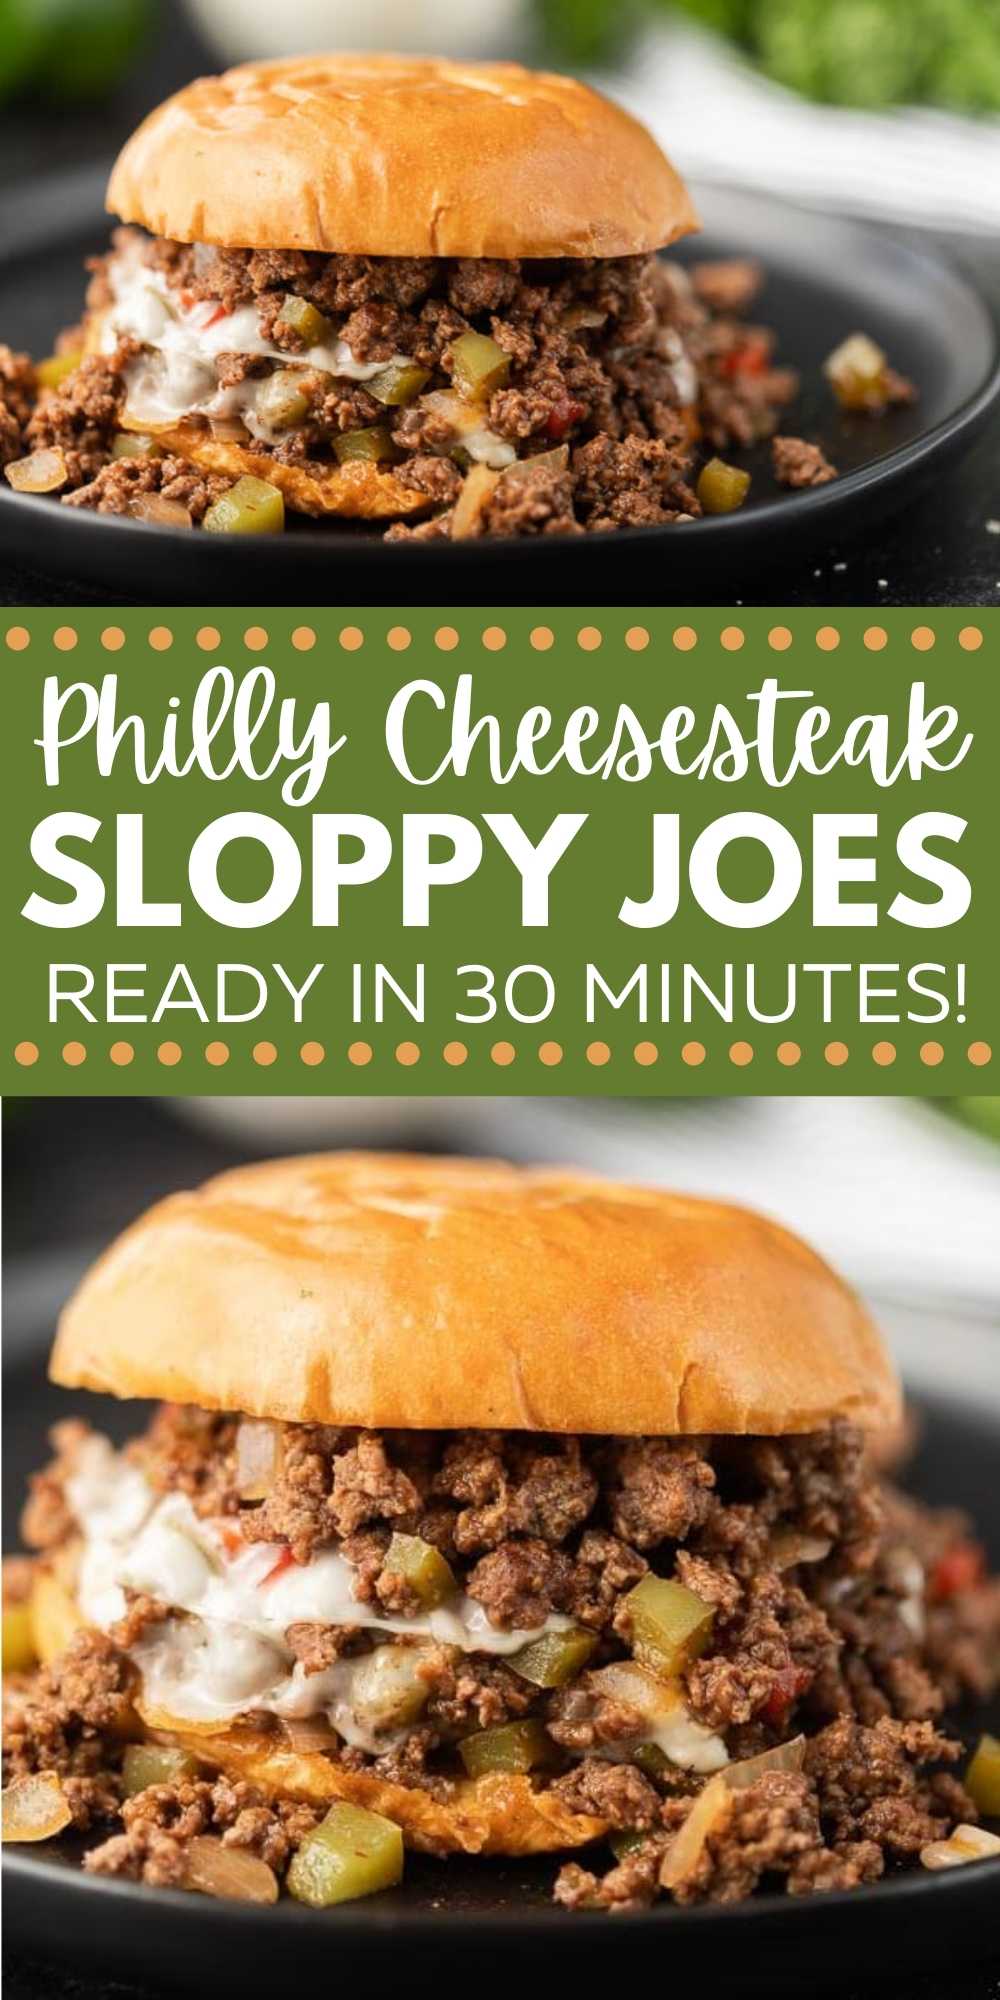 Easy Philly Cheesesteak Sloppy Joes Recipe - Philly Cheese Sloppy Joes